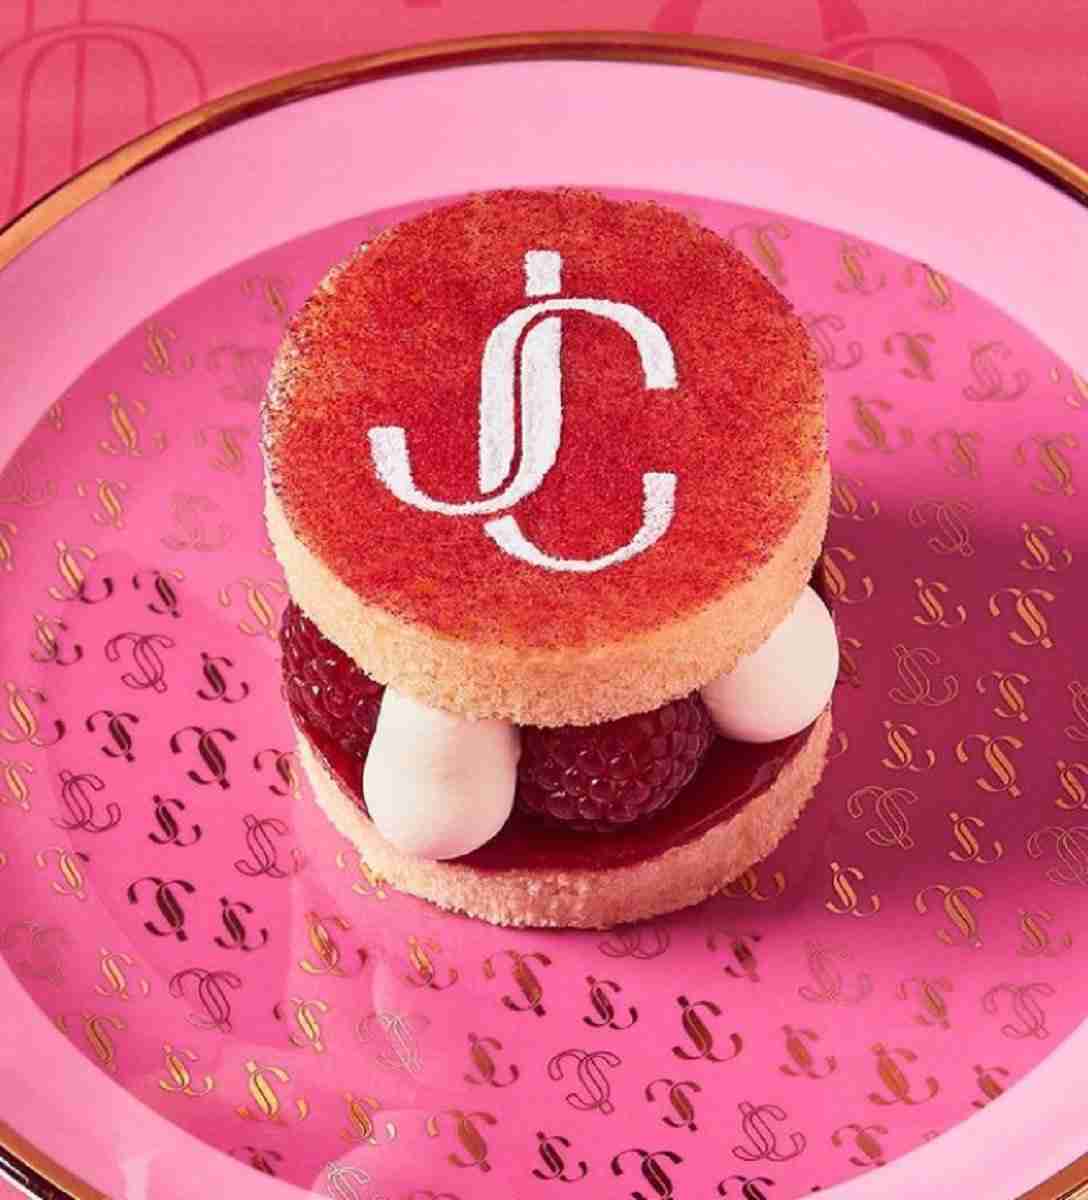 Tudo pink: Jimmy Choo inaugura café instagramável na Harrods